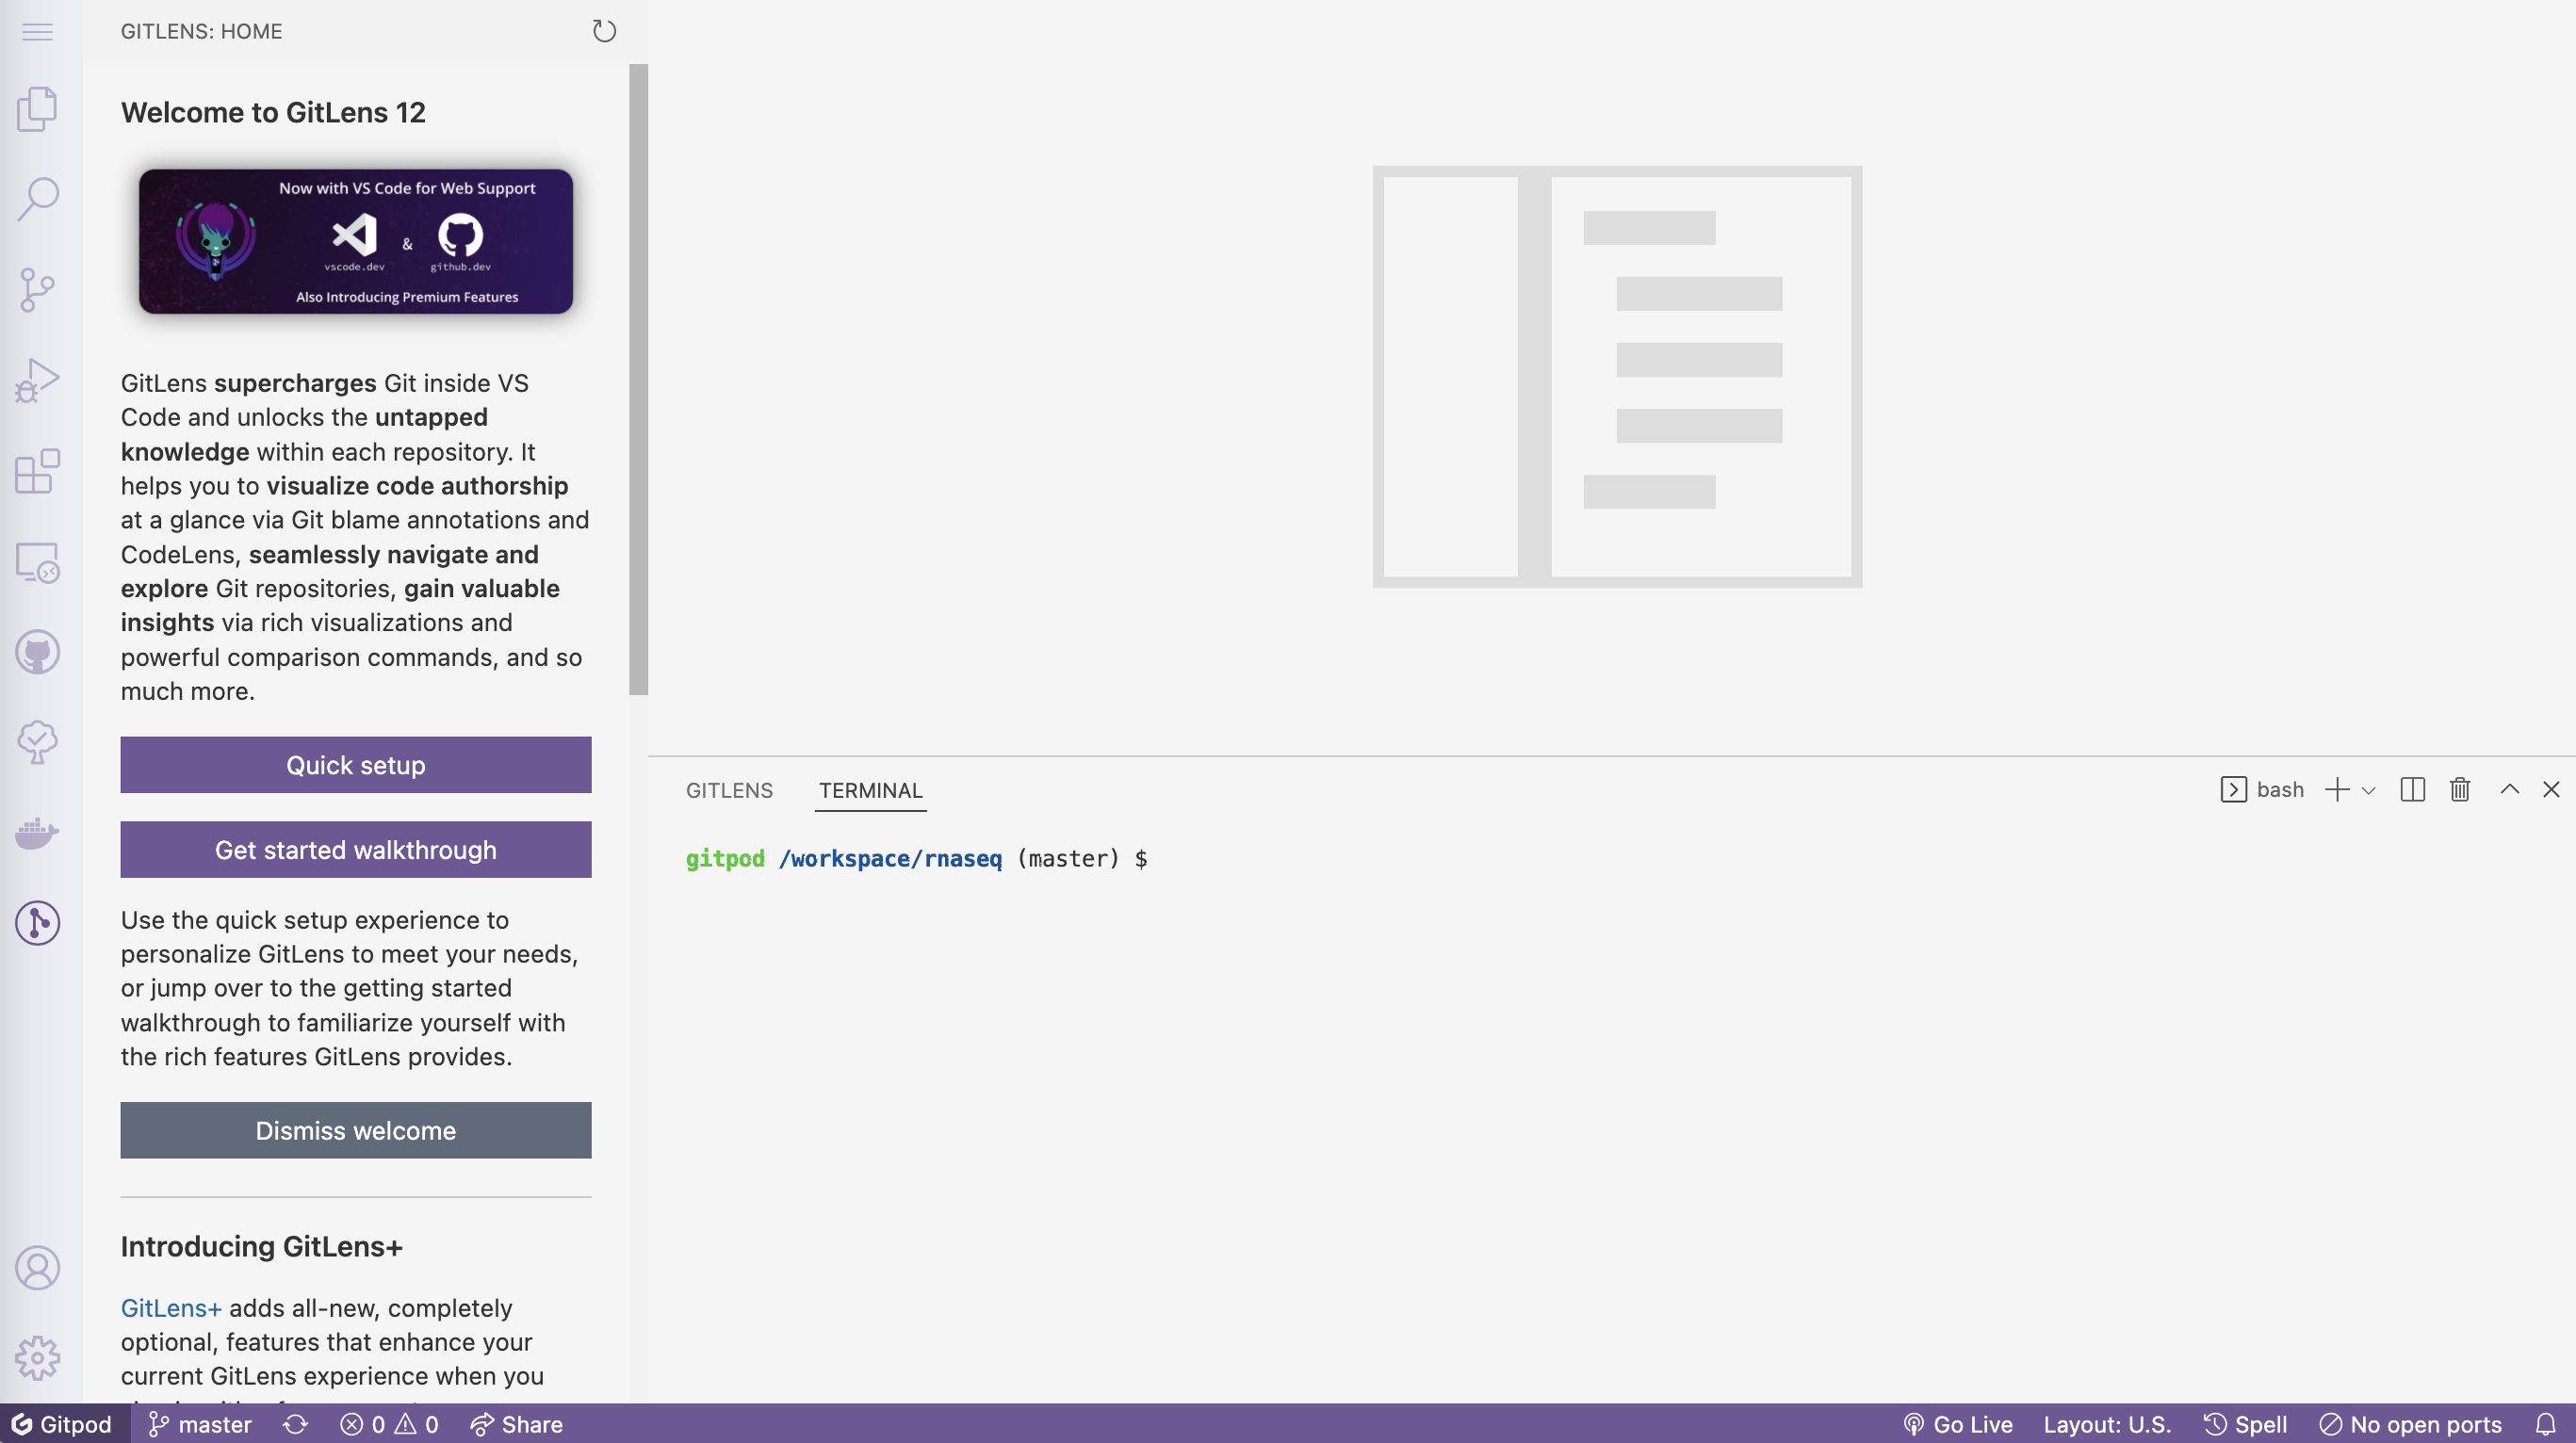 Screenshot of the gitpod interface